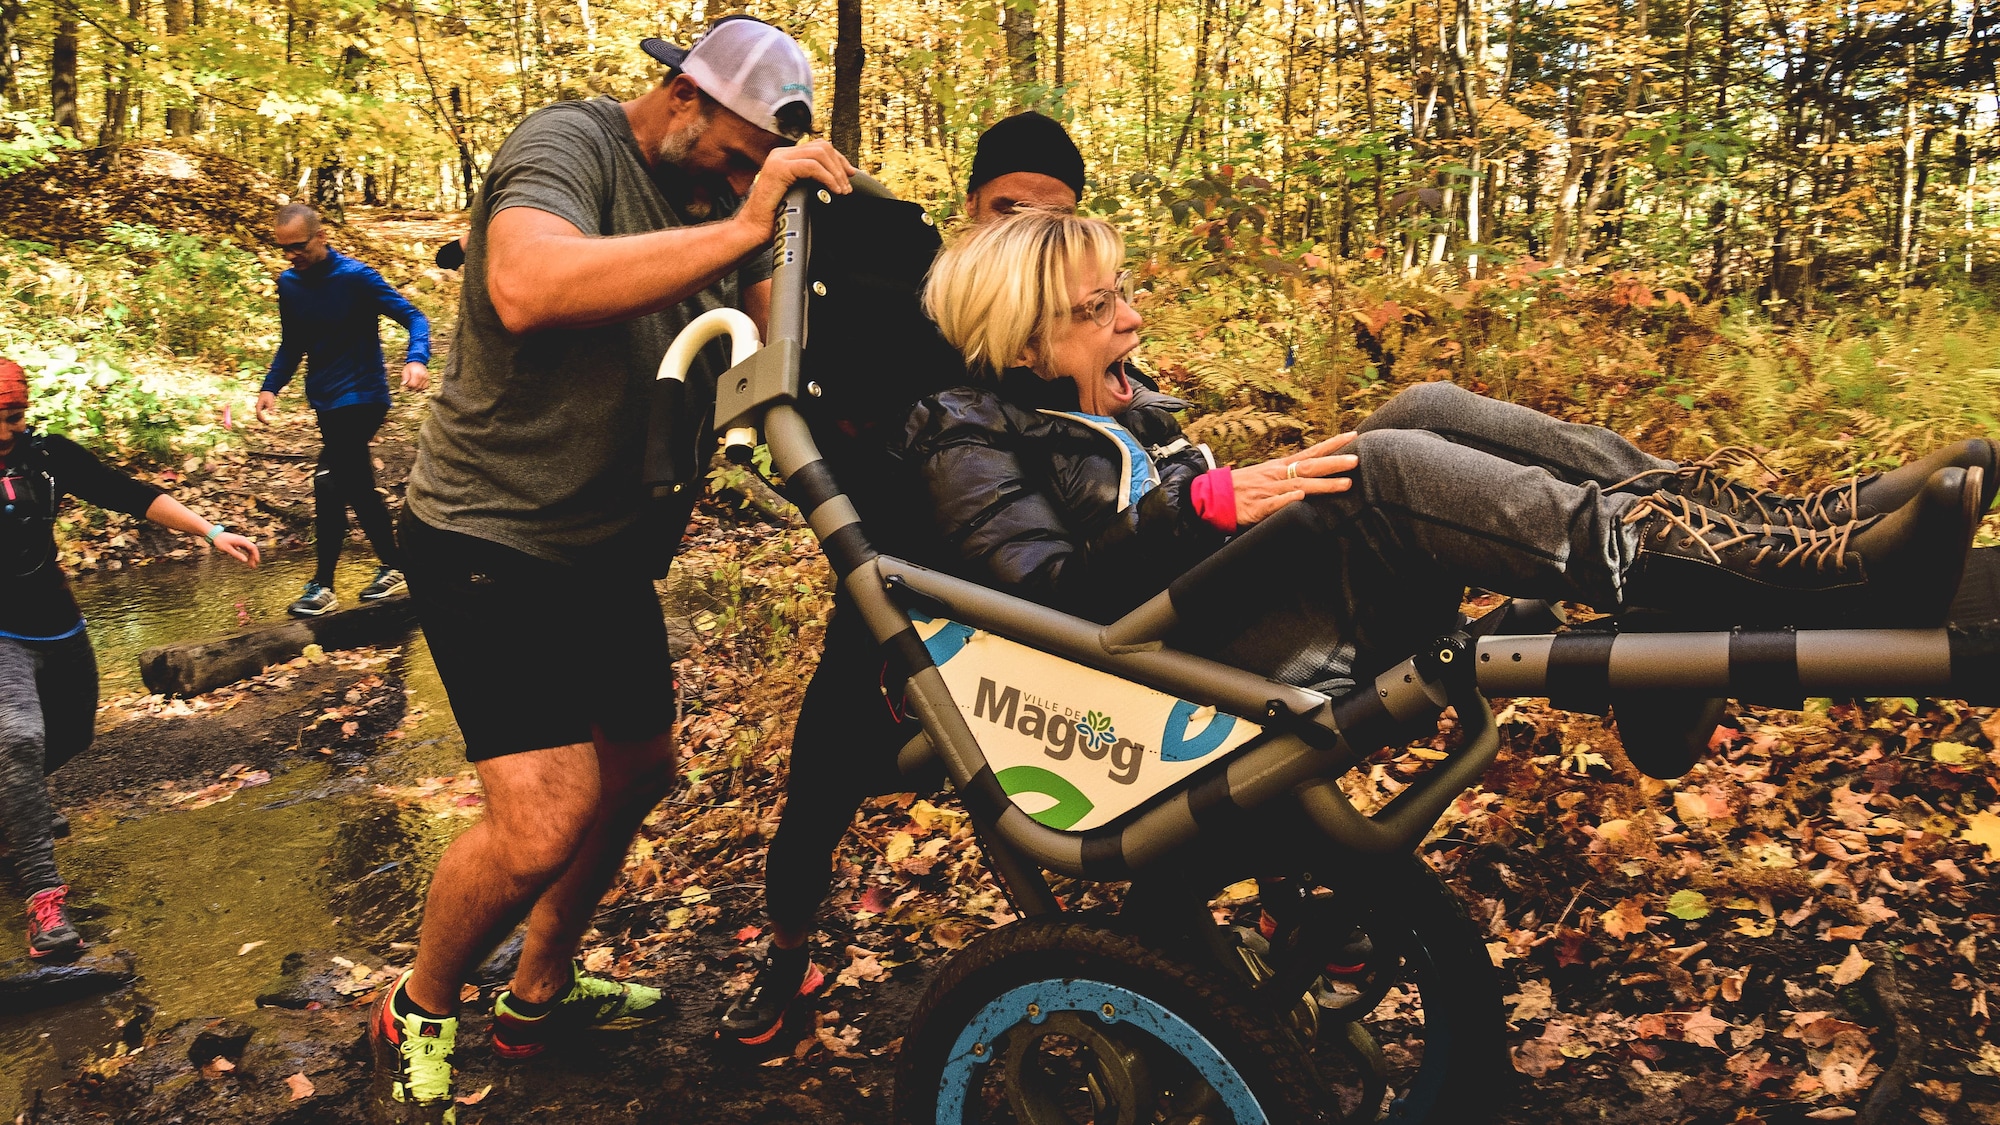 Steve Charbonneau et un autre homme poussent le chariot adapté d'une personne handicapée pendant une randonnées en forêt.